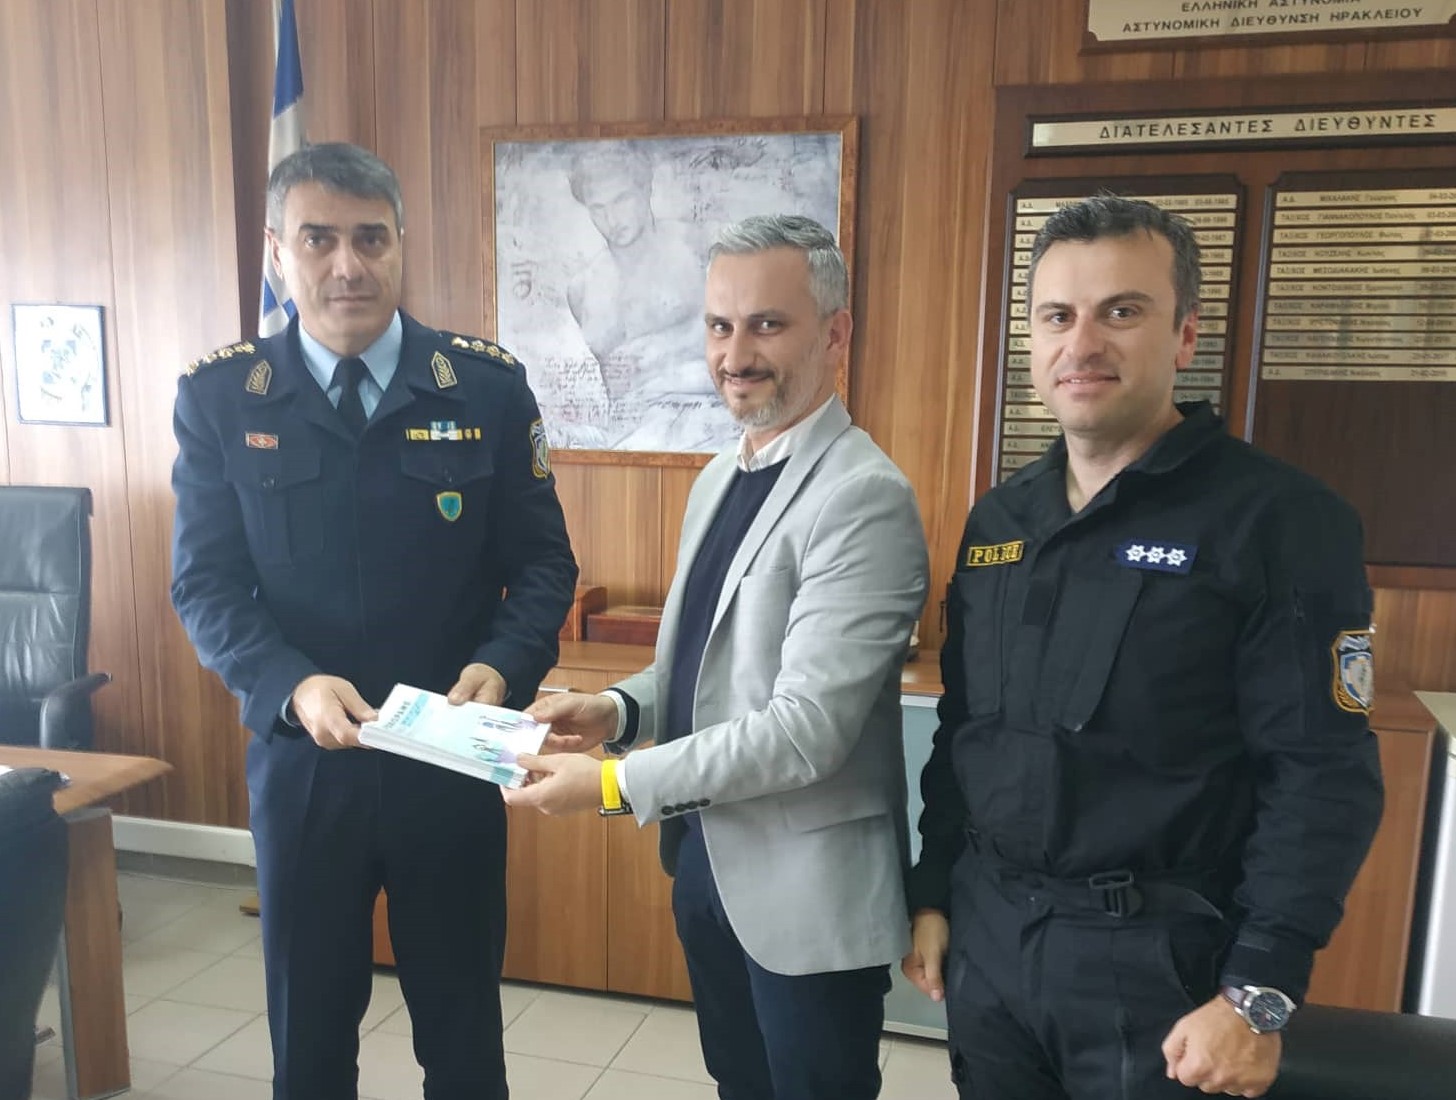 Καινοτομούν ο Δήμος Ηρακλείου & η Τροχαία με στόχο την ευαισθητοποίηση των πολιτών